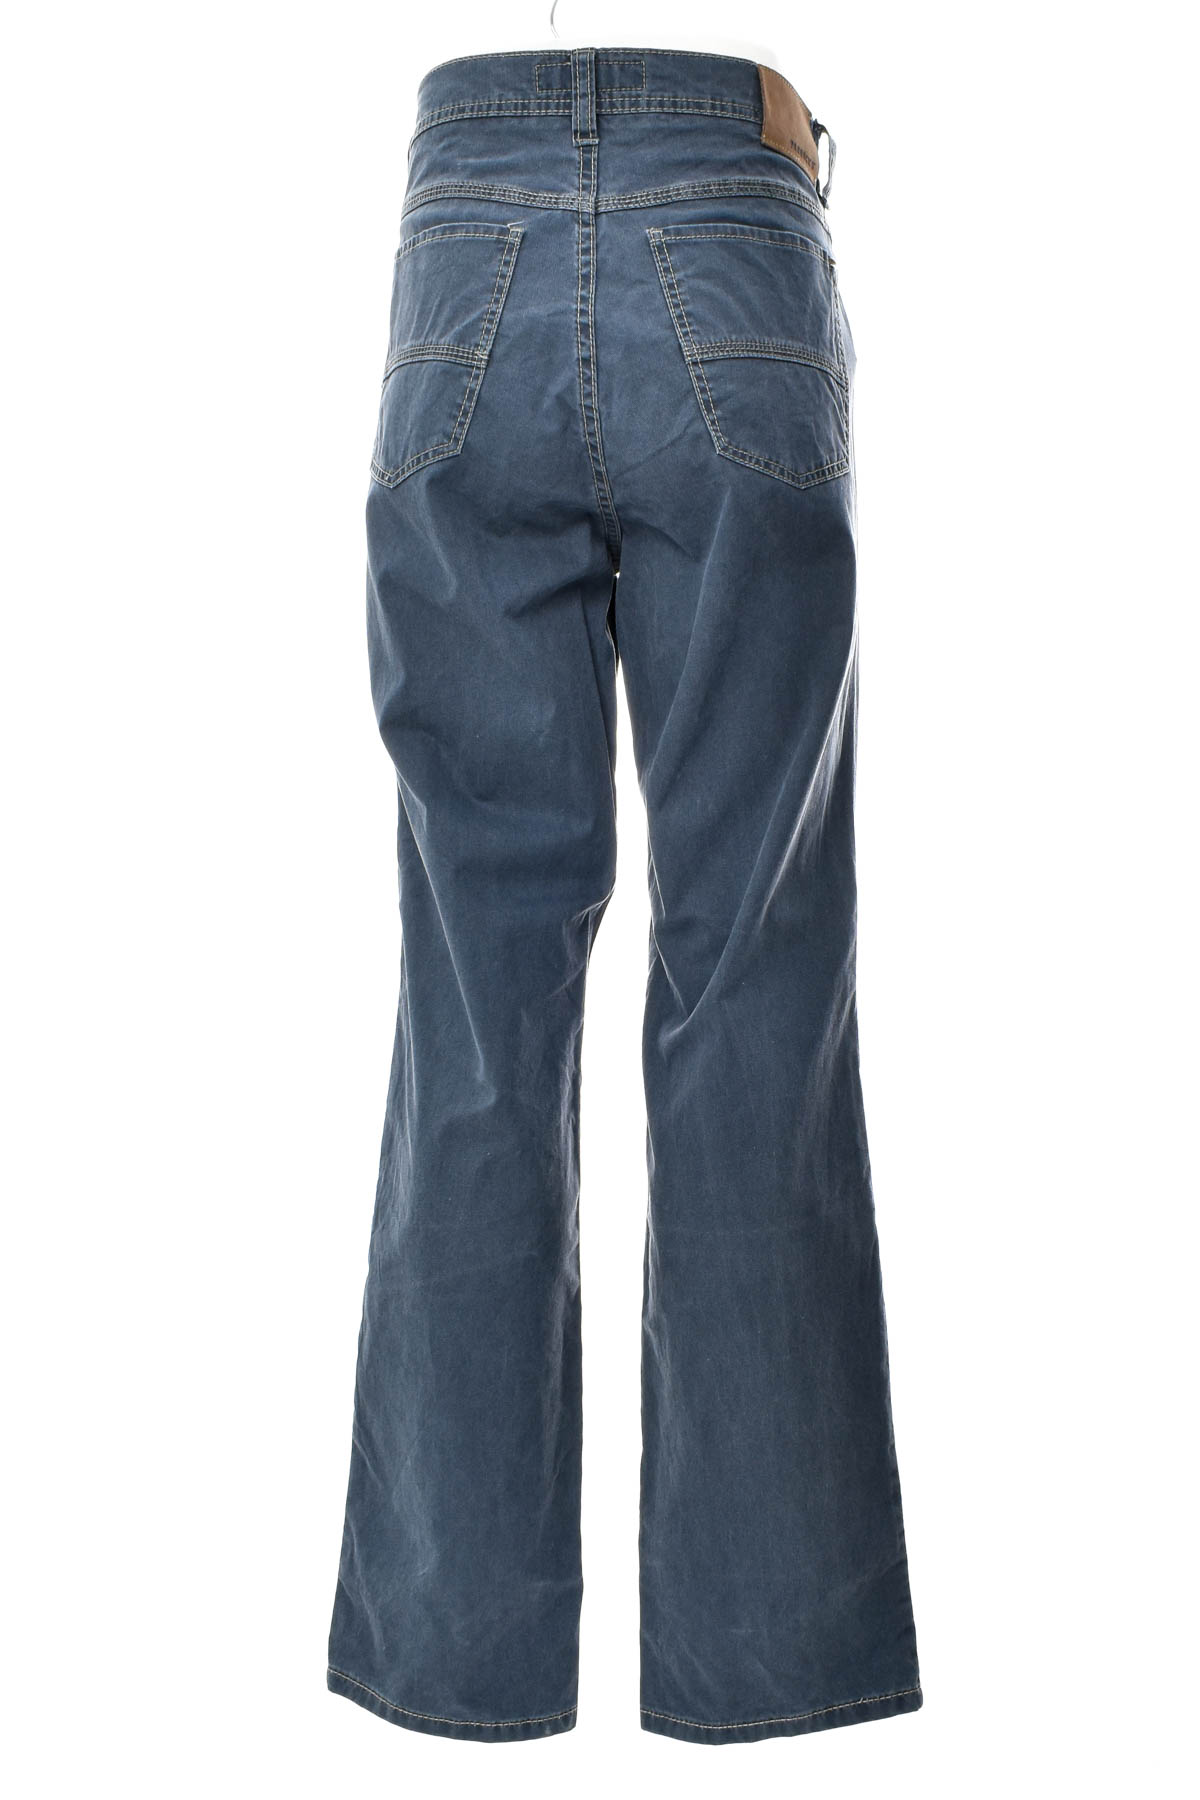 Men's jeans - Paddock's RANGER - 1